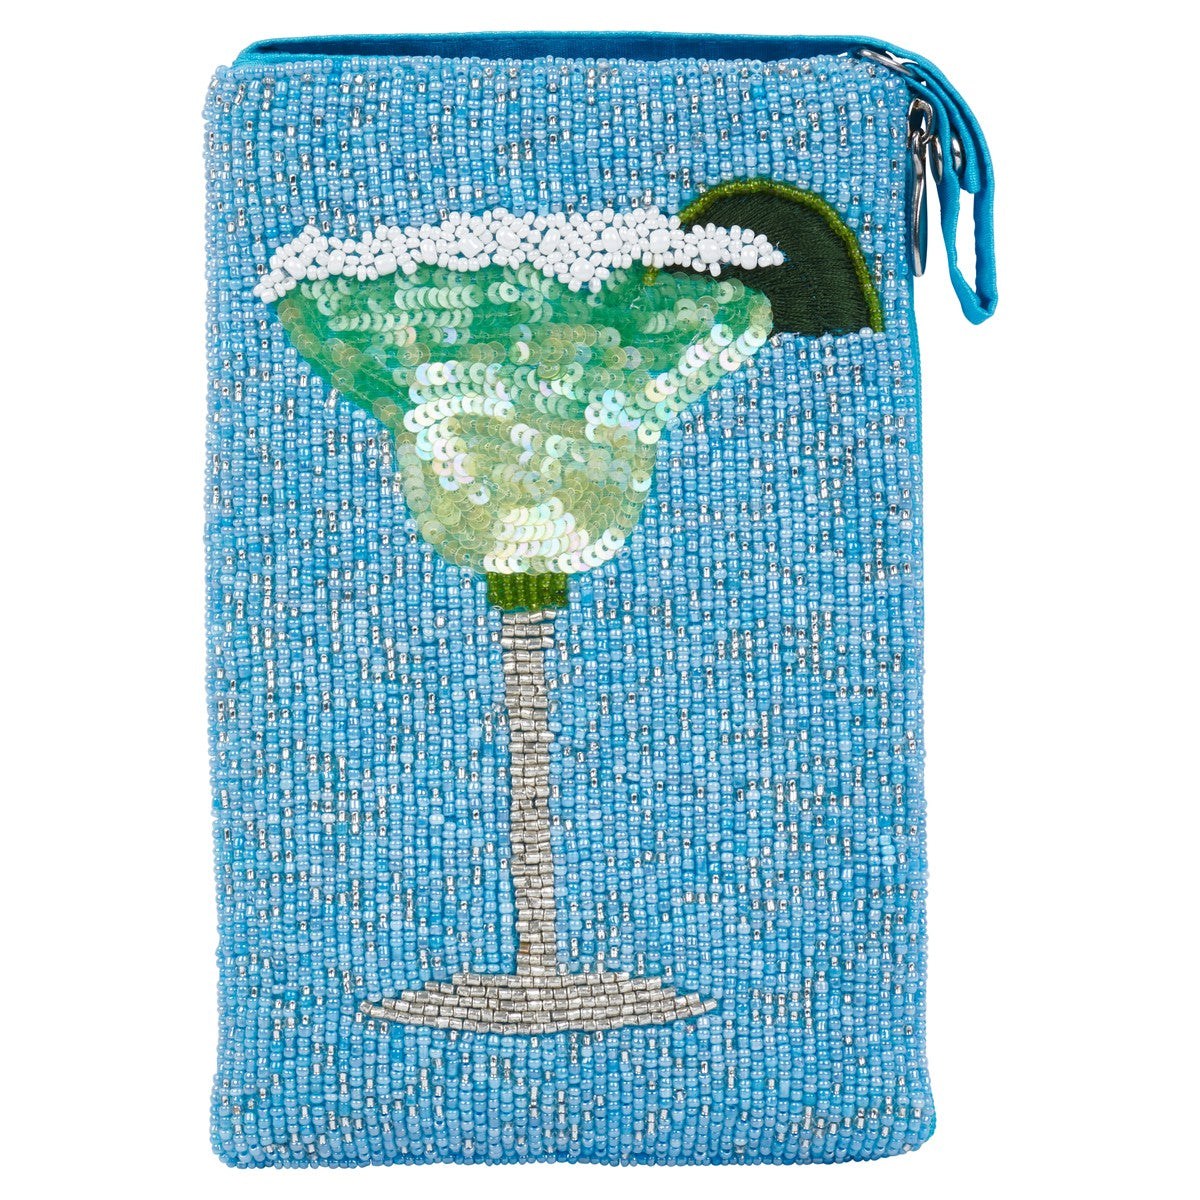 Margarita Club Bag - Smockingbird's